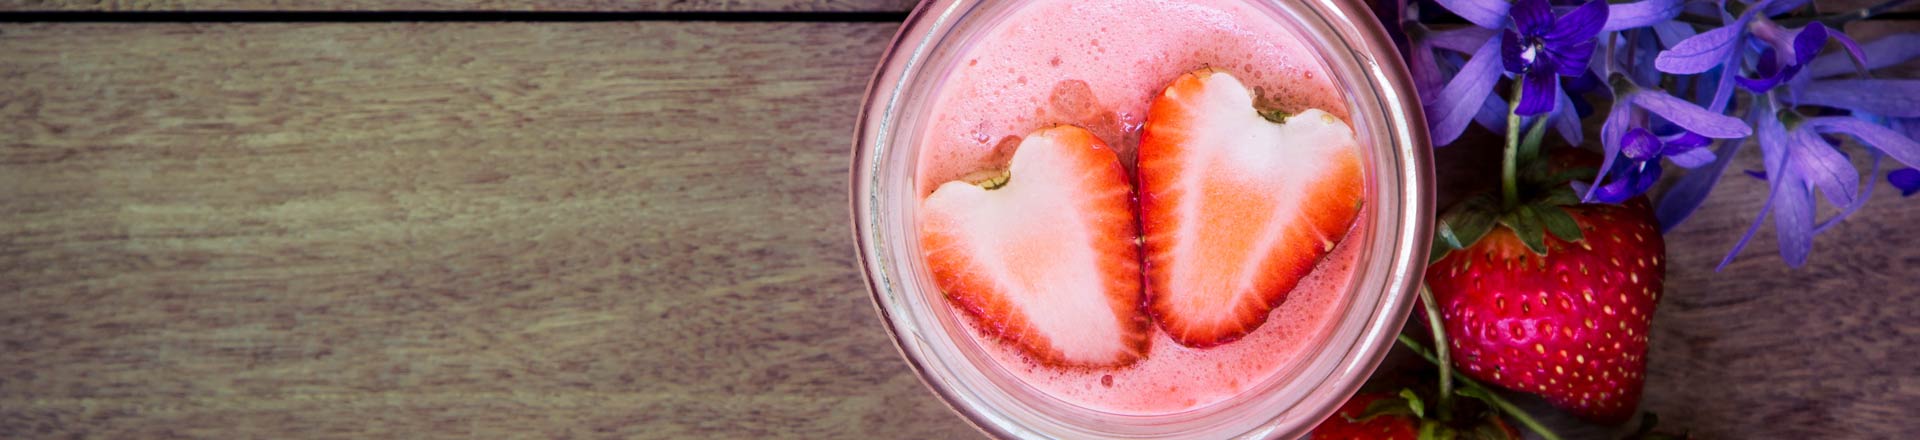 blending vs juicing - a strawberry smoothie has more fiber